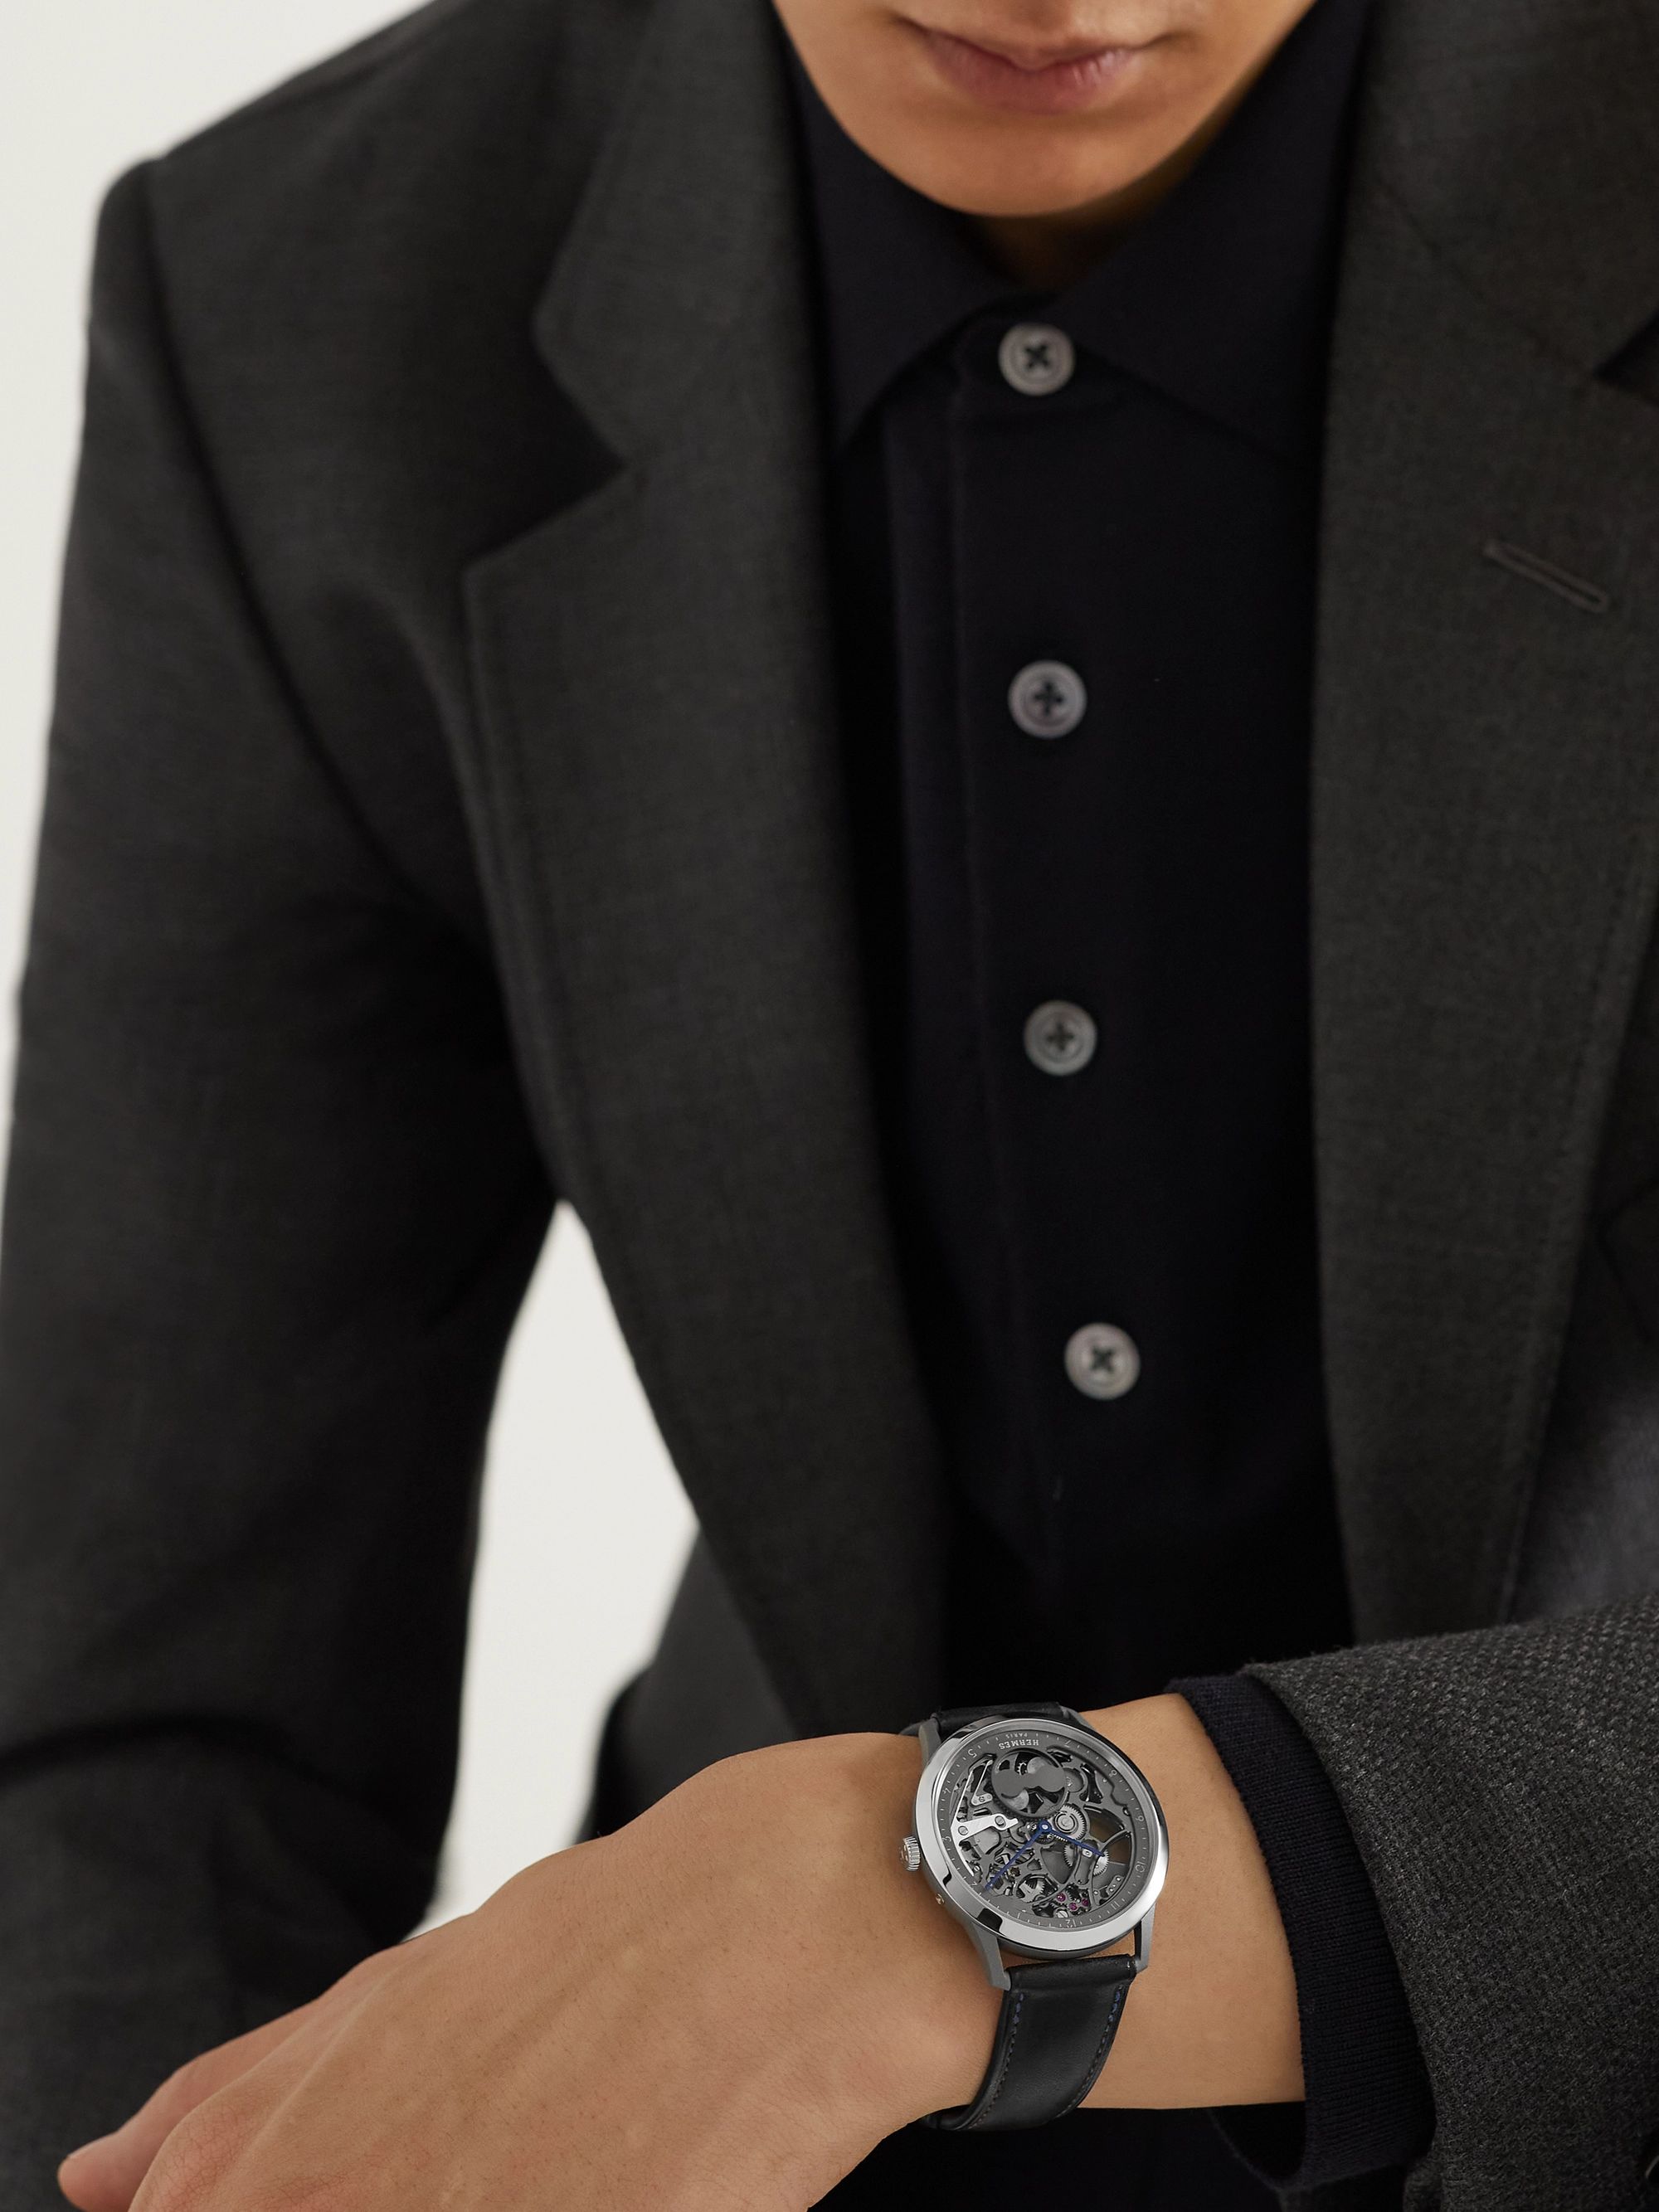 HERMÈS TIMEPIECES Slim d'Hermès Squelette Lune 39.5mm Automatic Titanium and Leather Watch, Ref. No. 054695WW00